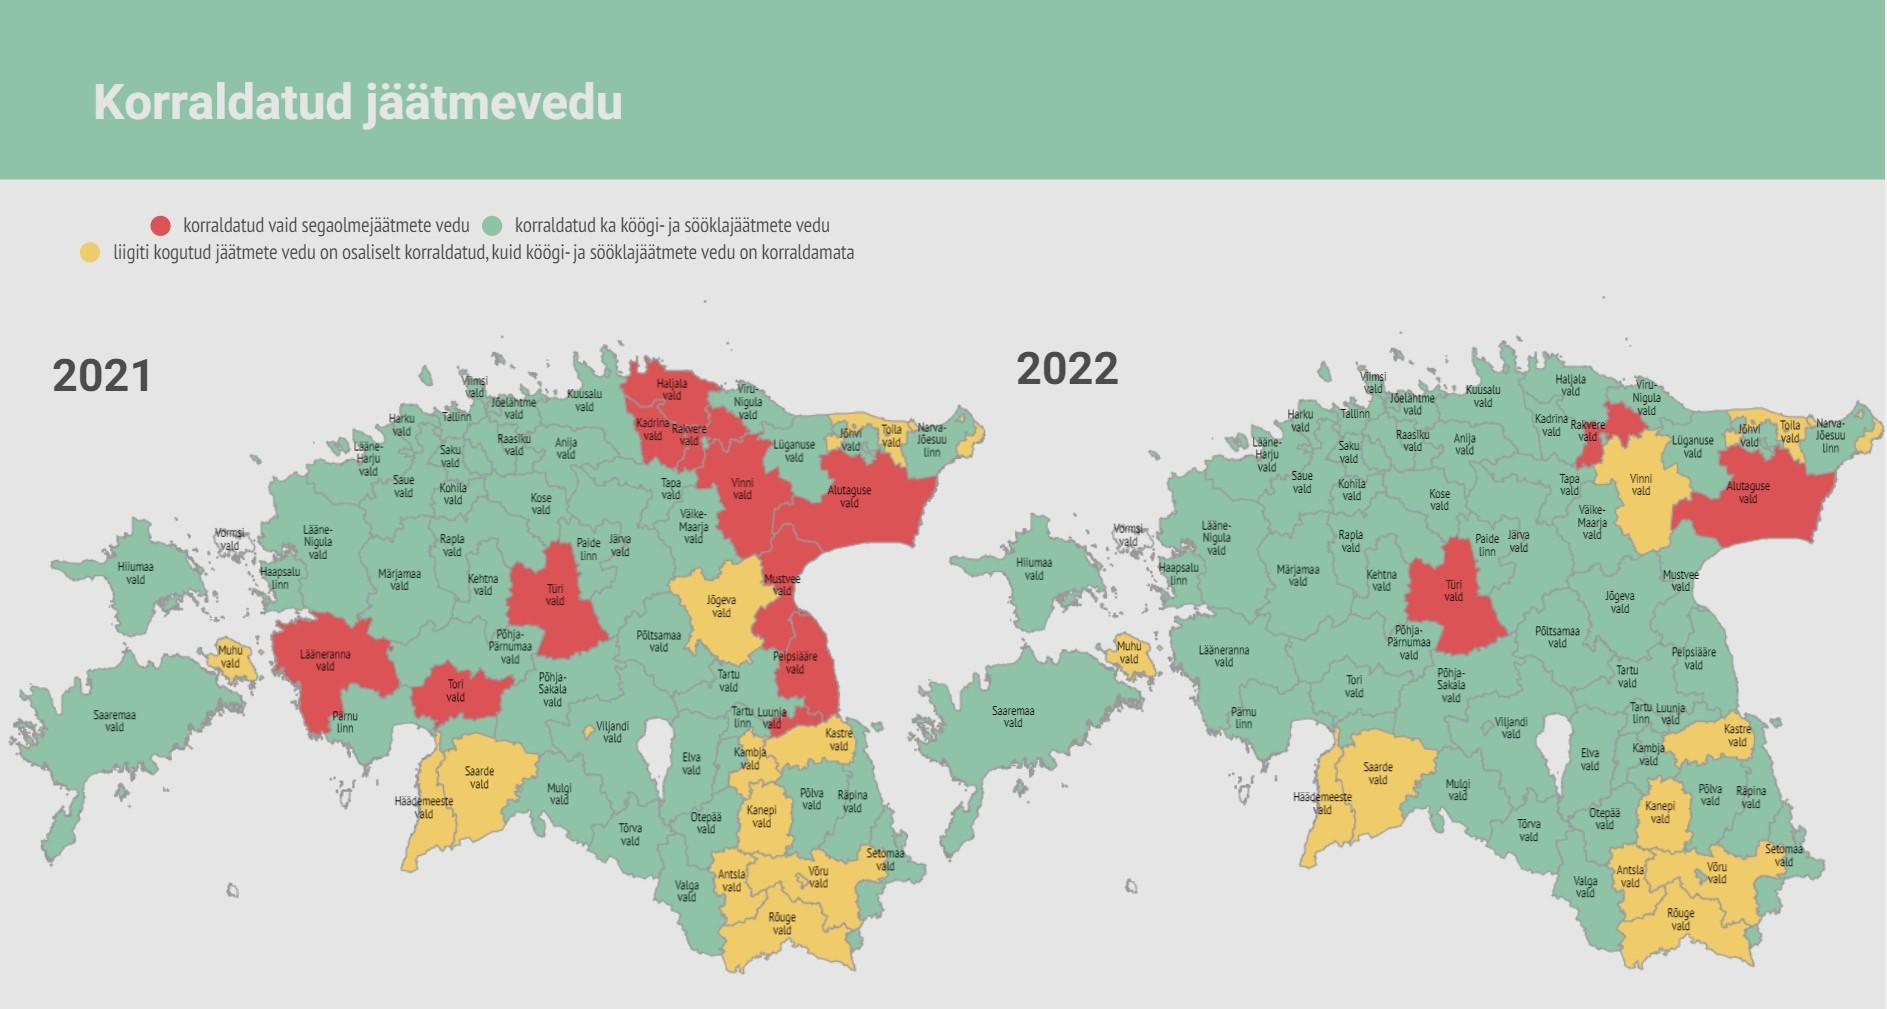 korraldatud jäätmeveo võrdlus eesti kaardil 2021-2022